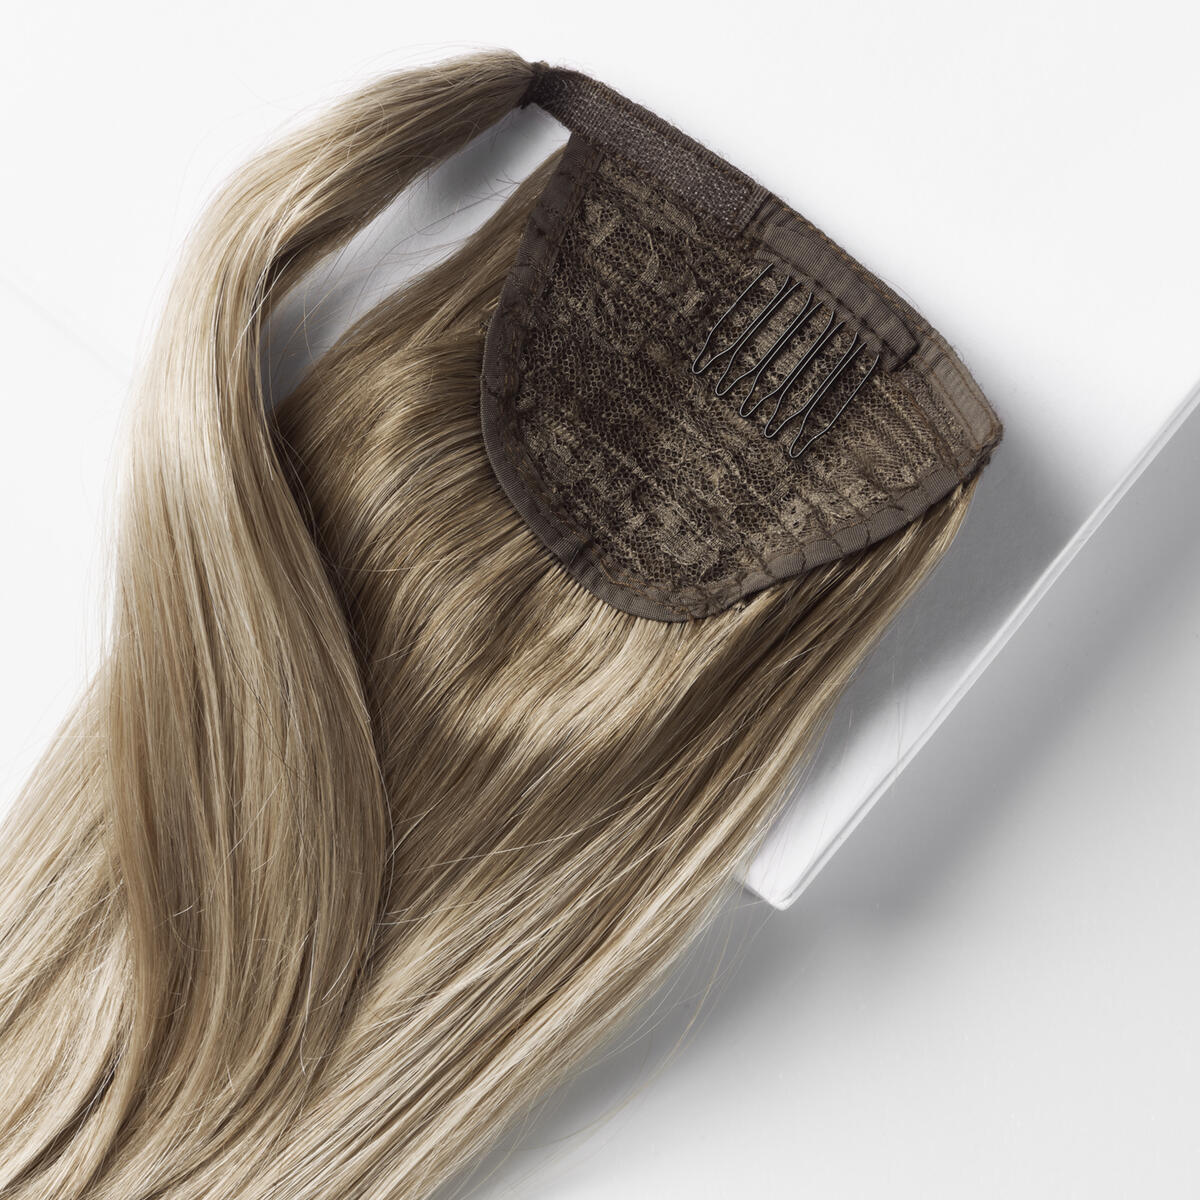 Fibre Clip-in Ponytail Aus veganem Haar hergestellt B2.6/10.7 Dark Ashy Blonde Balayage 40 cm